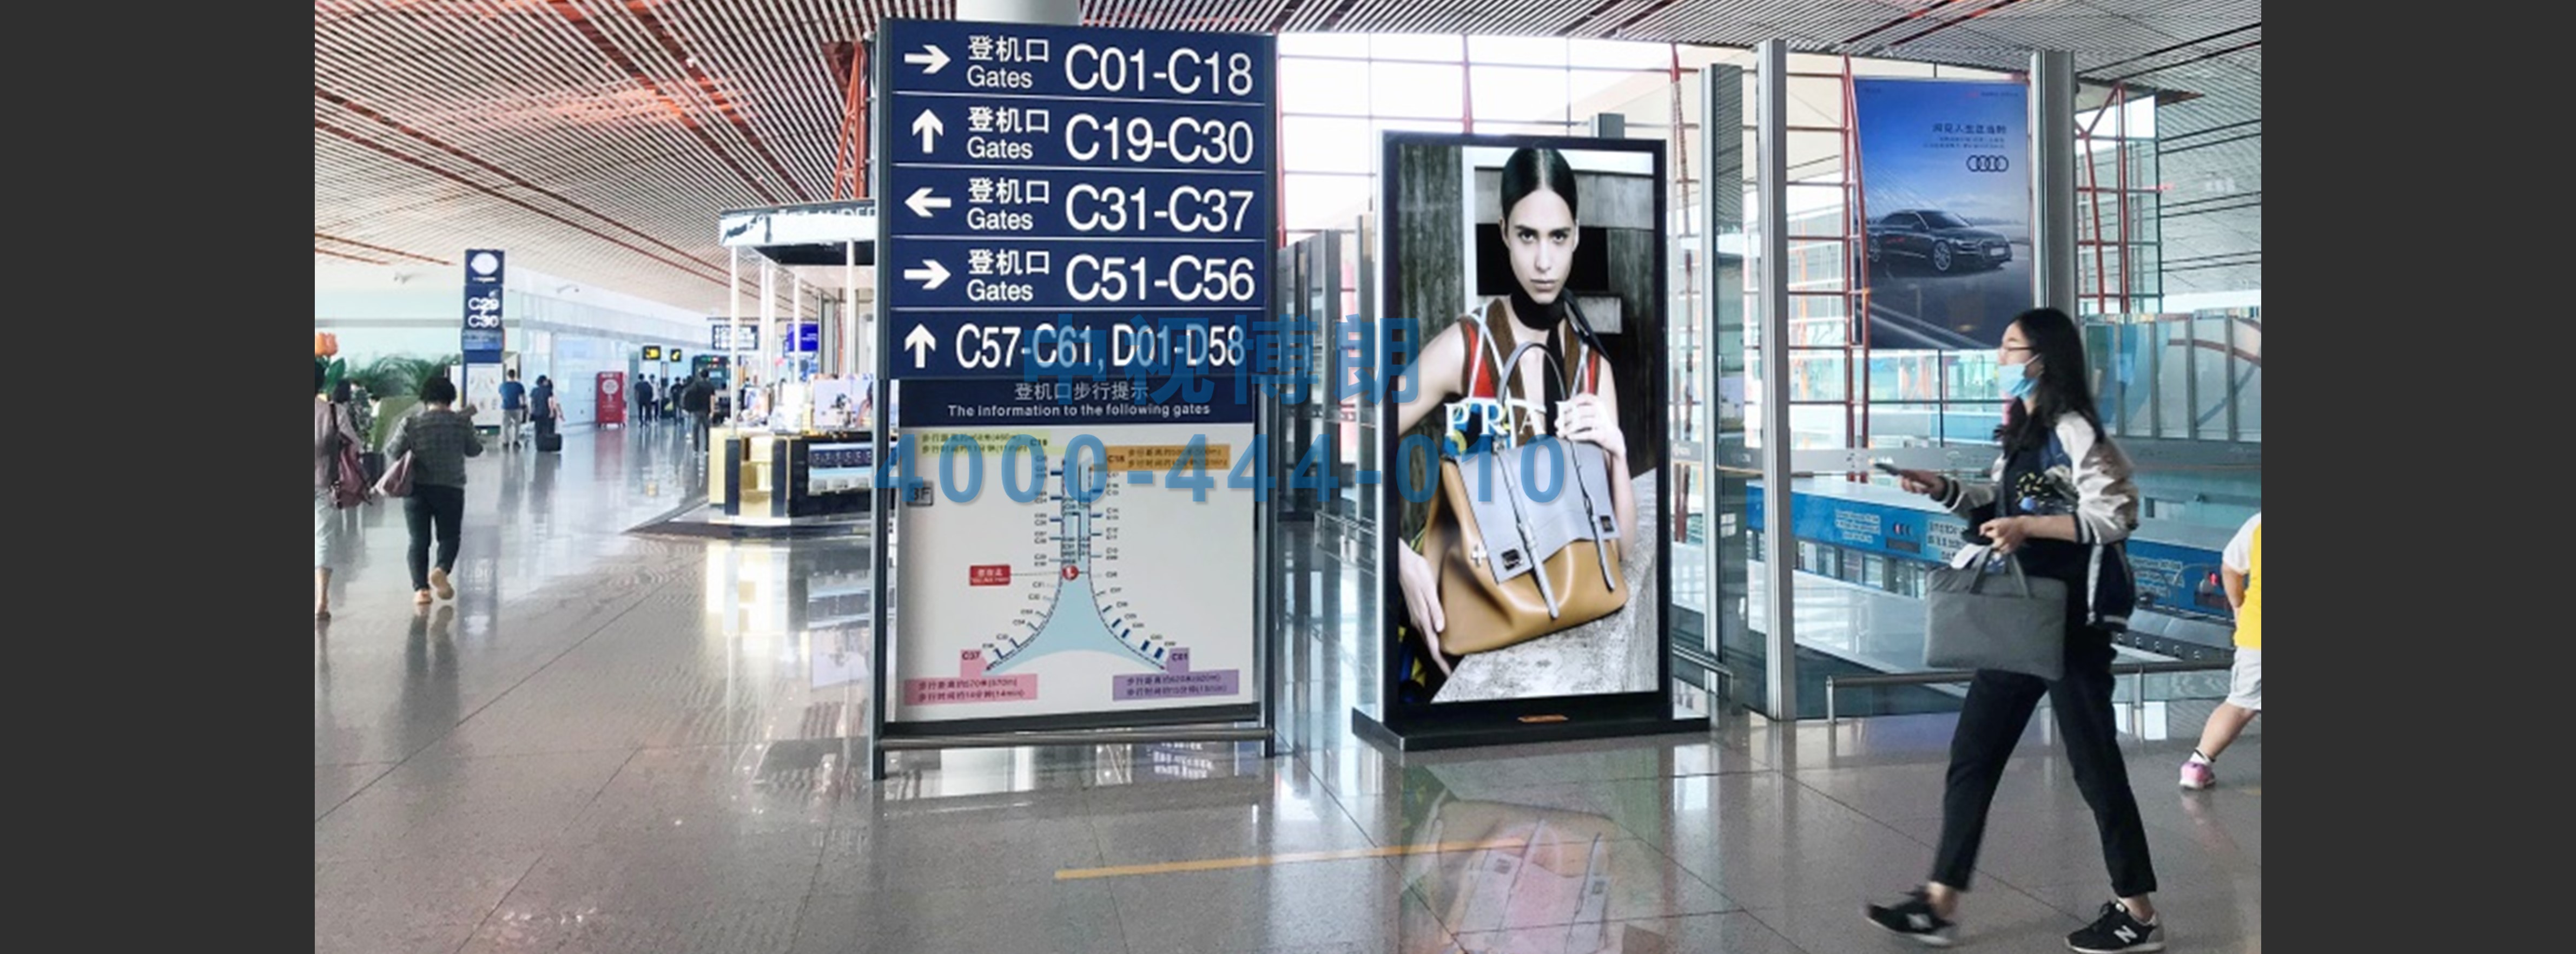 北京首都机场广告-T3国内出发跨区域76台刷屏套装